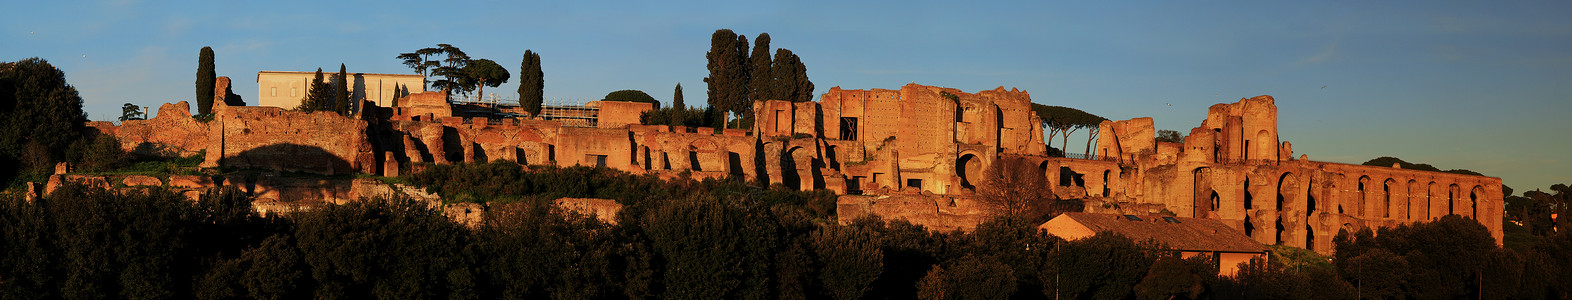 意大利罗马帕拉蒂尼山宫殿遗址全景图片